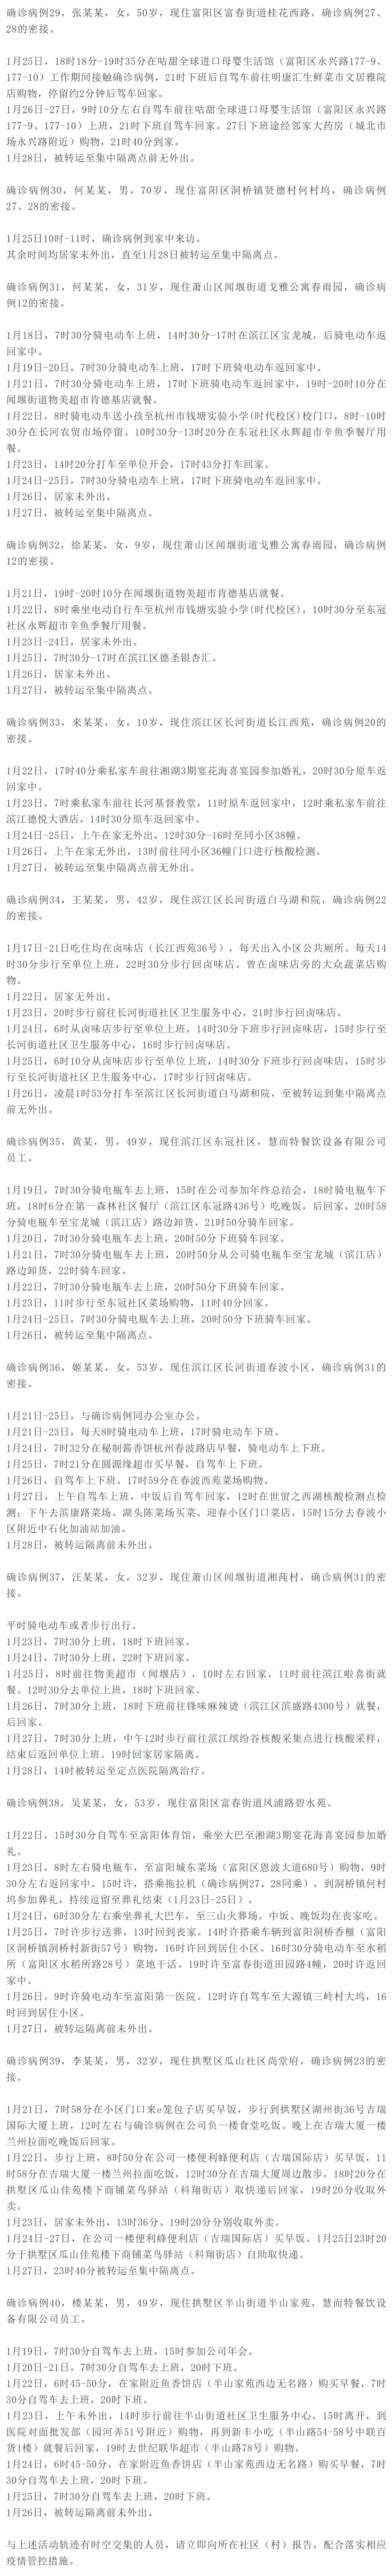 传播|杭州新增12例新冠肺炎确诊病例